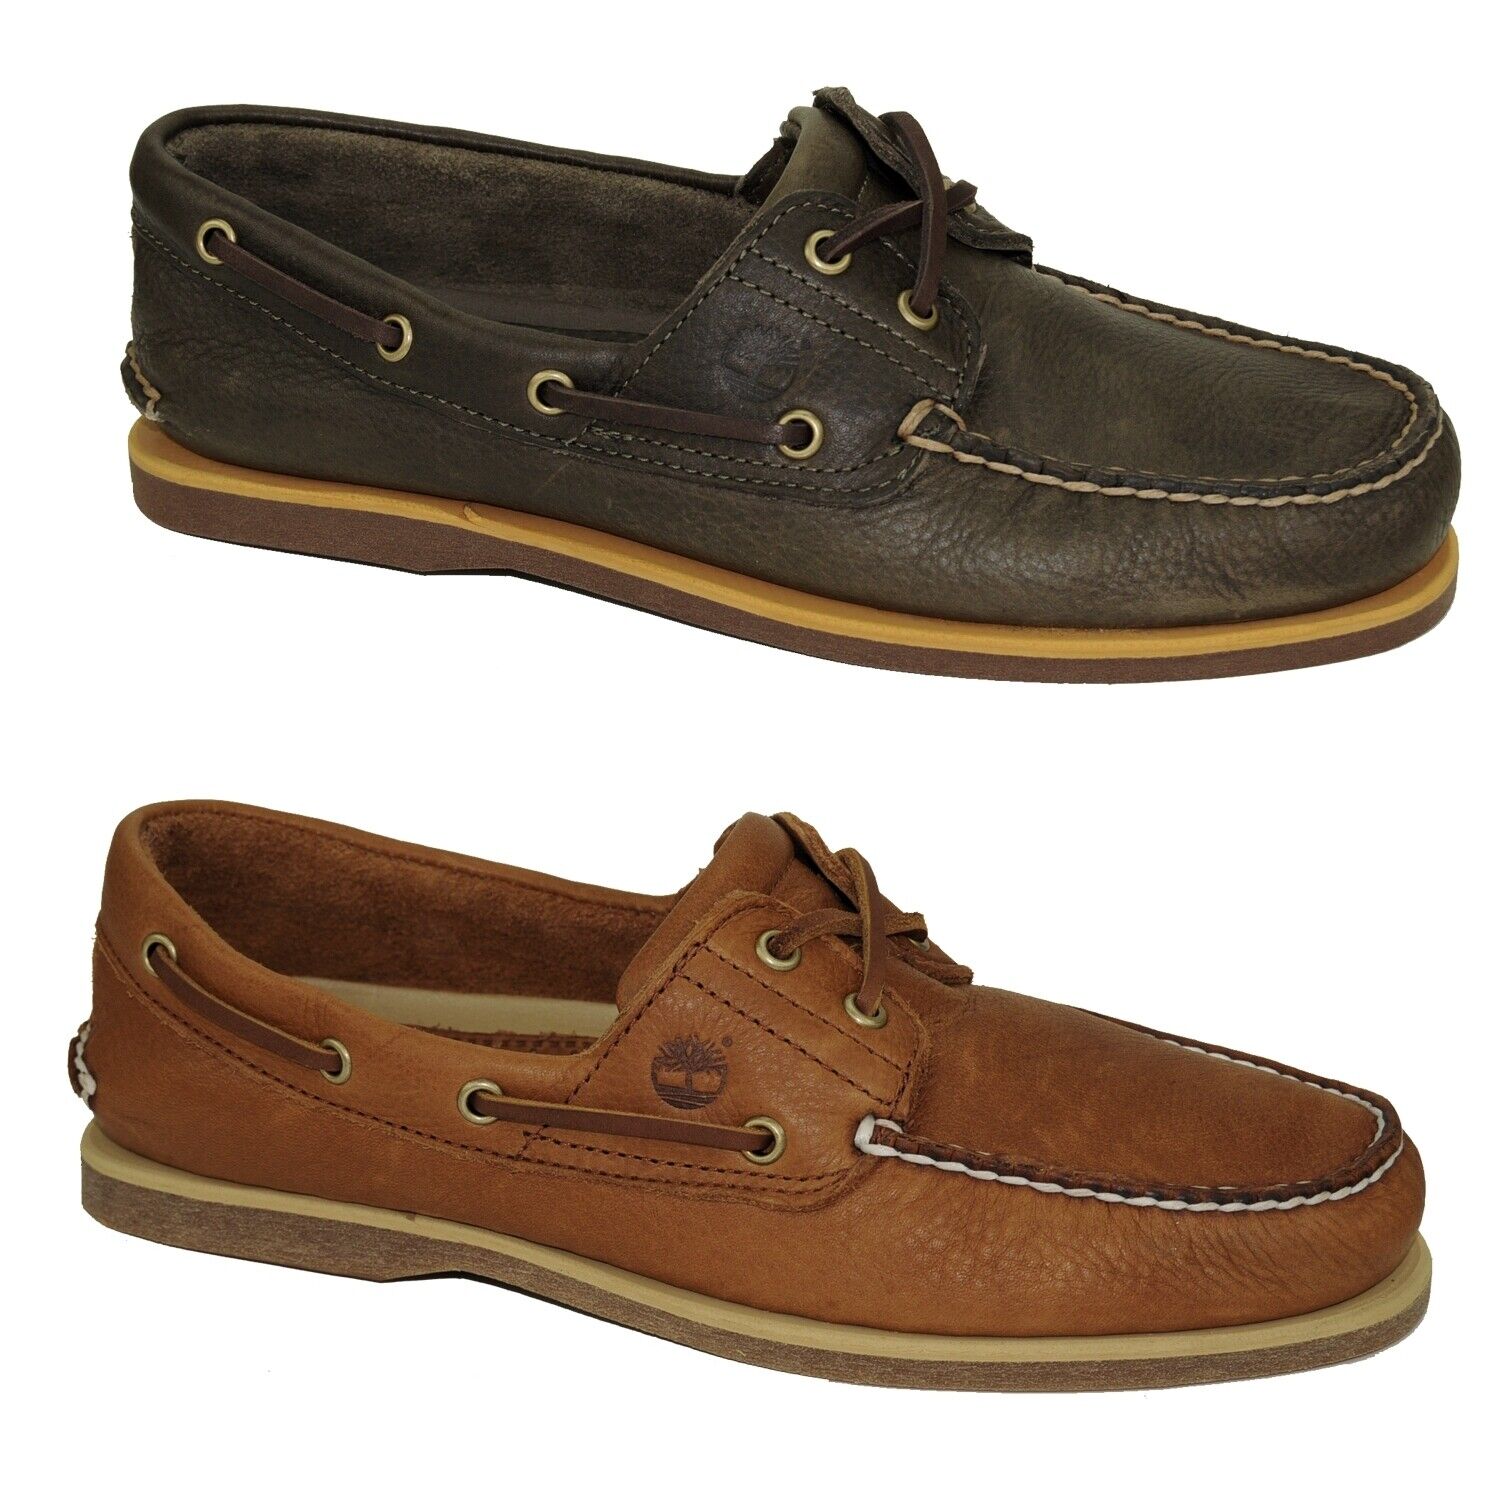 Timberland Classic Boat Shoes 2-Eye Deckschuhe Segelschuhe Herren Schuhe Modell- Farbe A2AFC - Olive Schuhgröße EUR 41 US 7,5